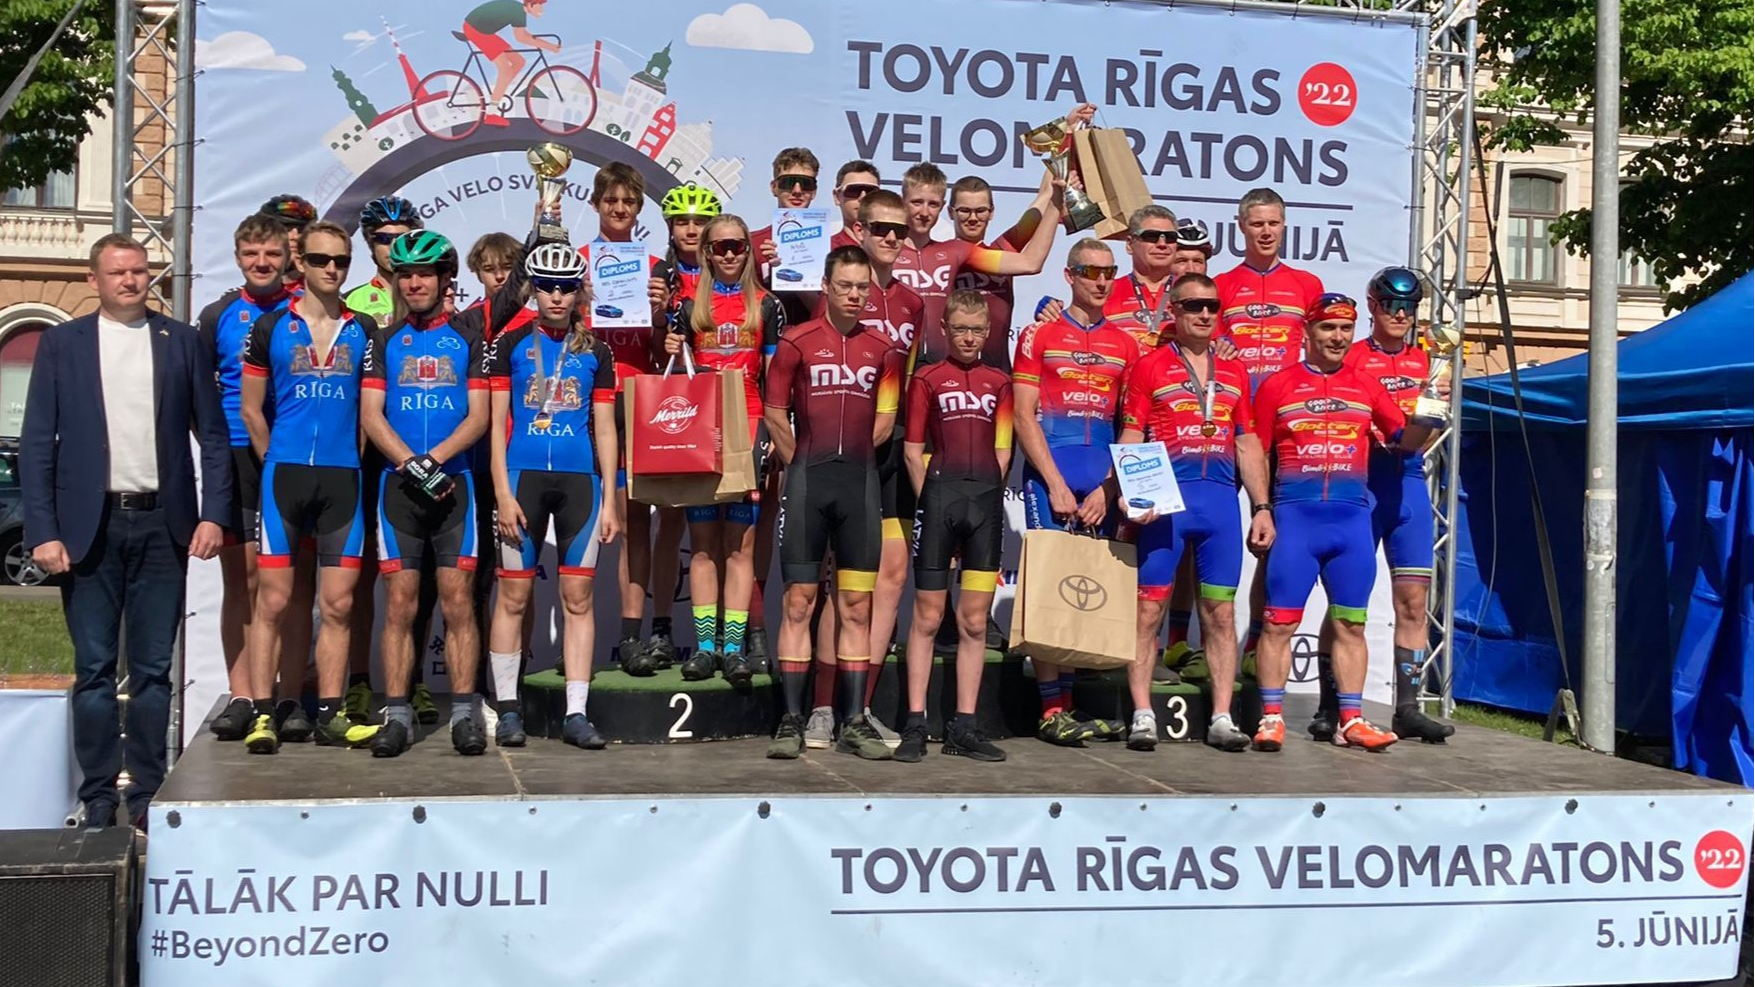 Aizvadītas šosejas riteņbraukšanas sacensības - Latvijas čempionāts U14 vecuma grupā un “Toyota” Rīgas velomaratons